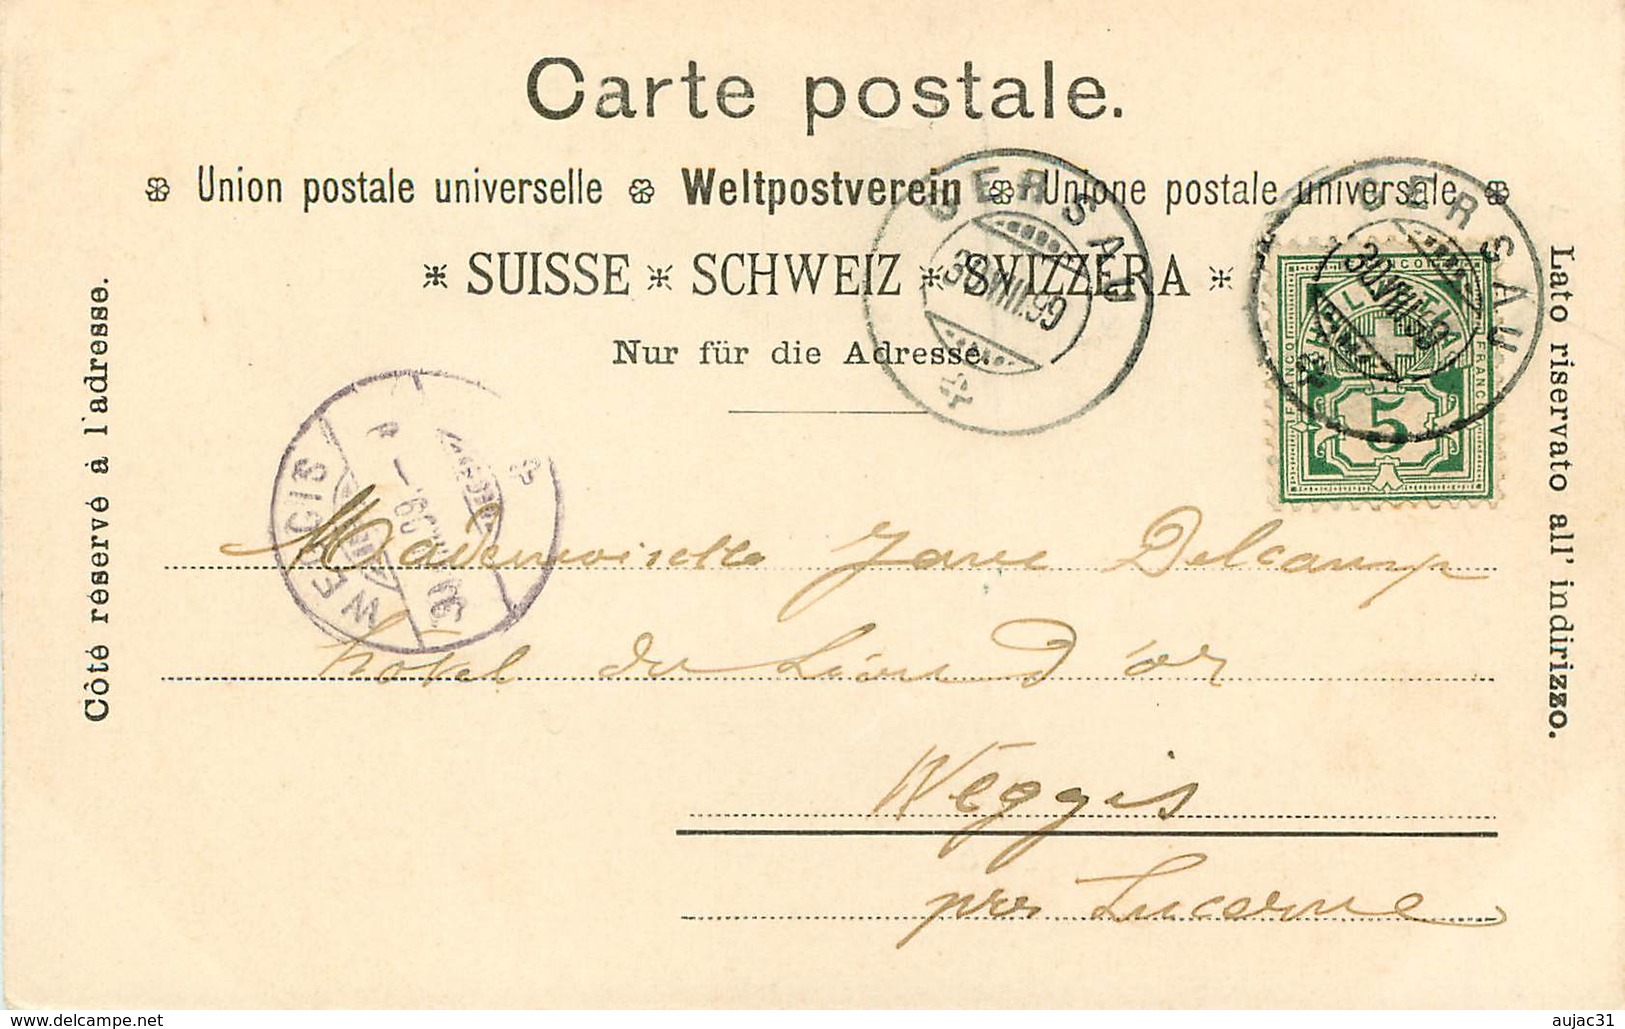 Suisse - Swiss - Schweiz - Pionnières - Pionnière - Gruss Aus Gersau - Circulé En 1899 - 2 Scans - état - Gersau